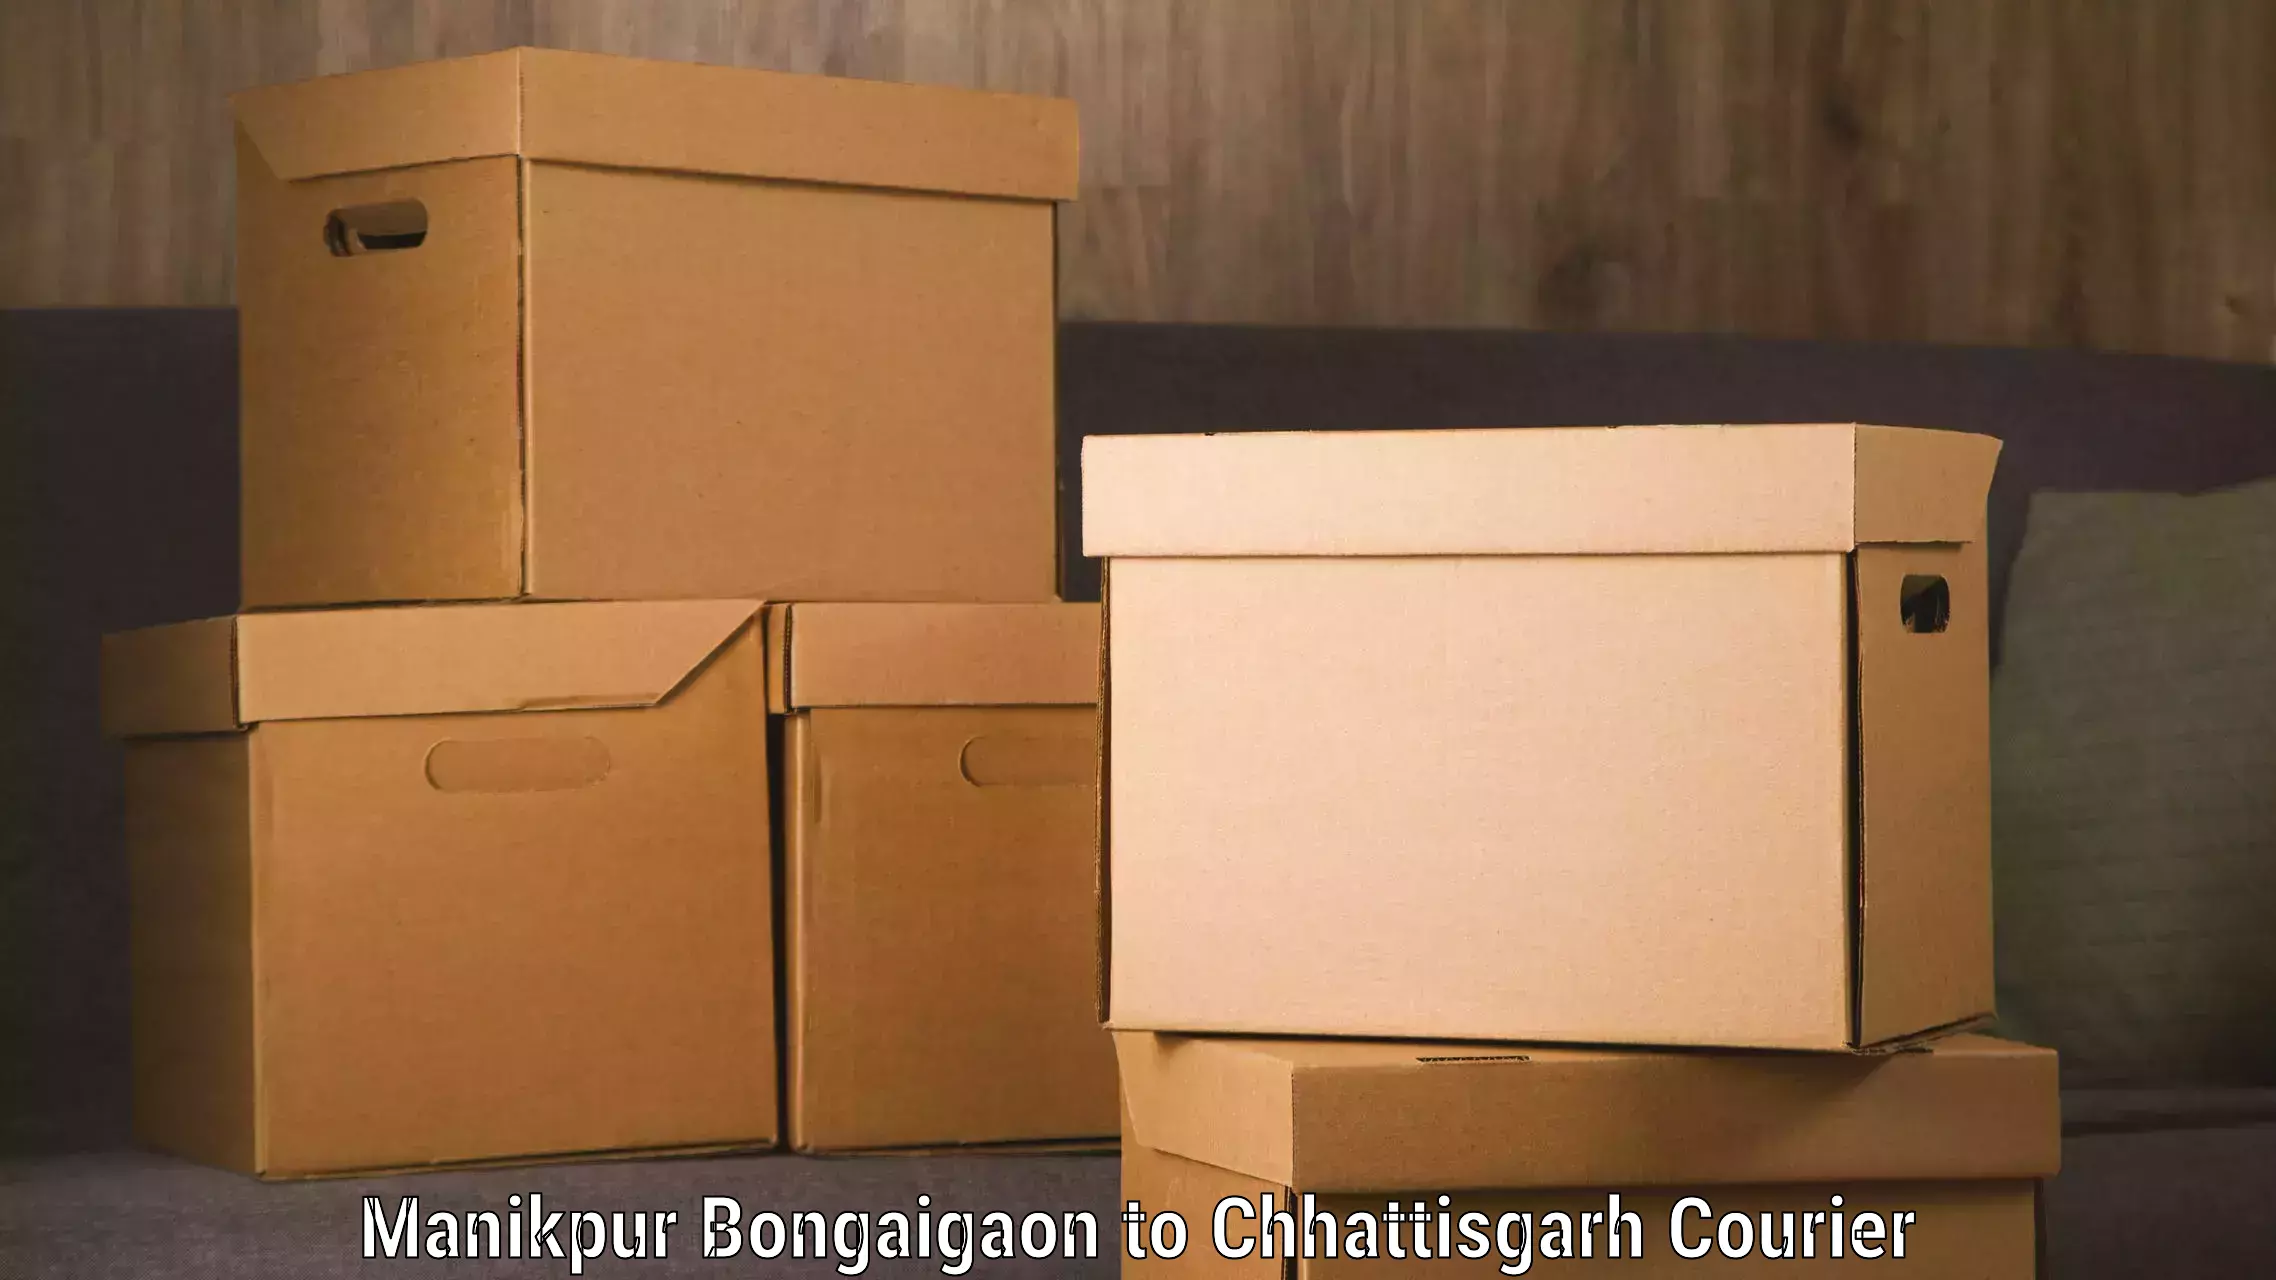 Luggage transport schedule Manikpur Bongaigaon to Ramanujganj